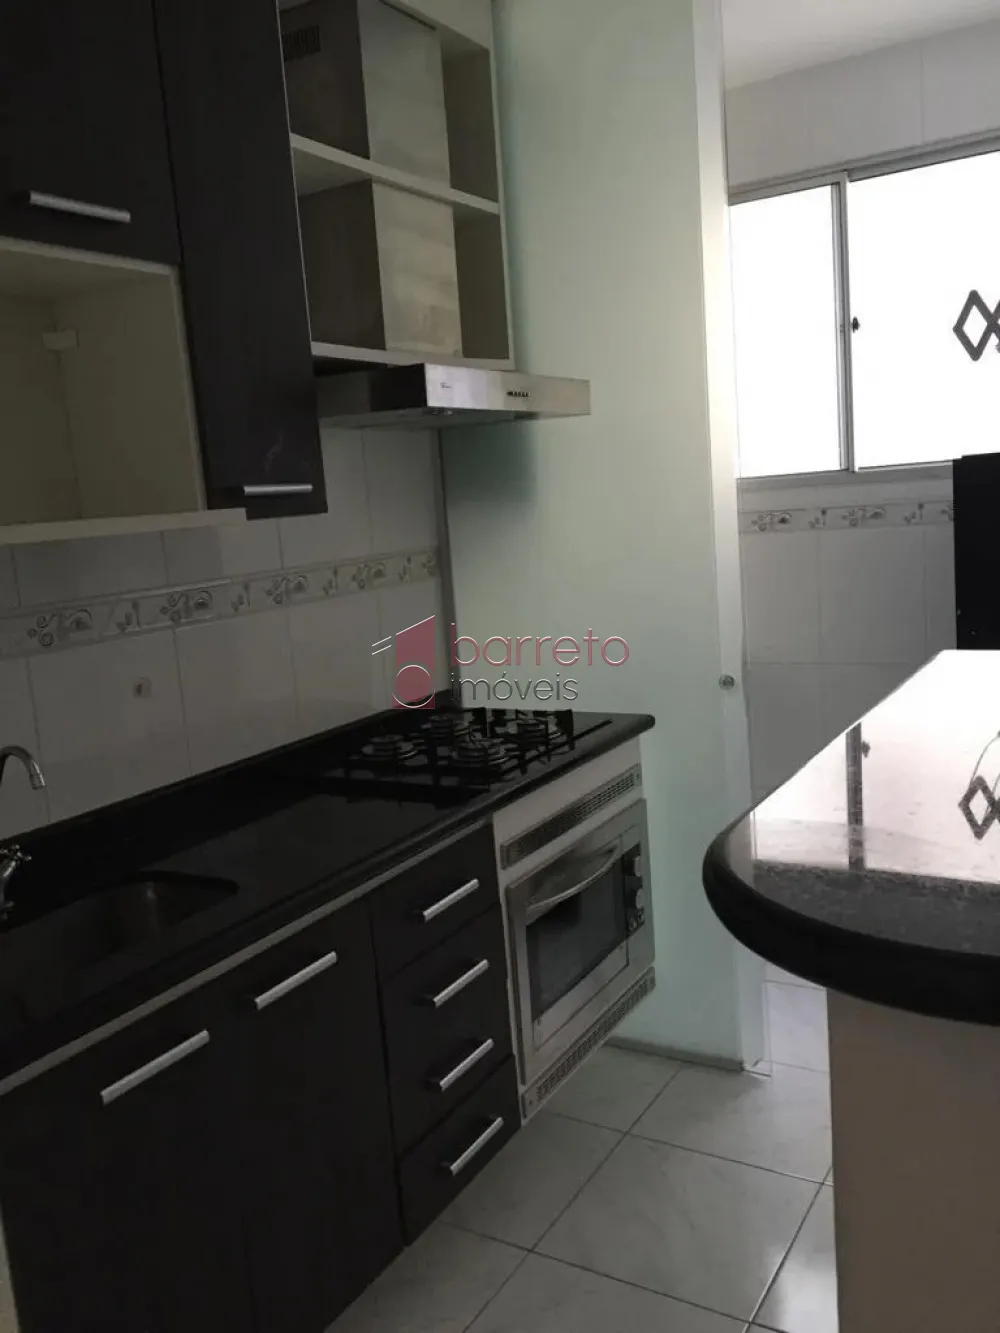 Comprar Apartamento / Padrão em Jundiaí R$ 300.000,00 - Foto 3